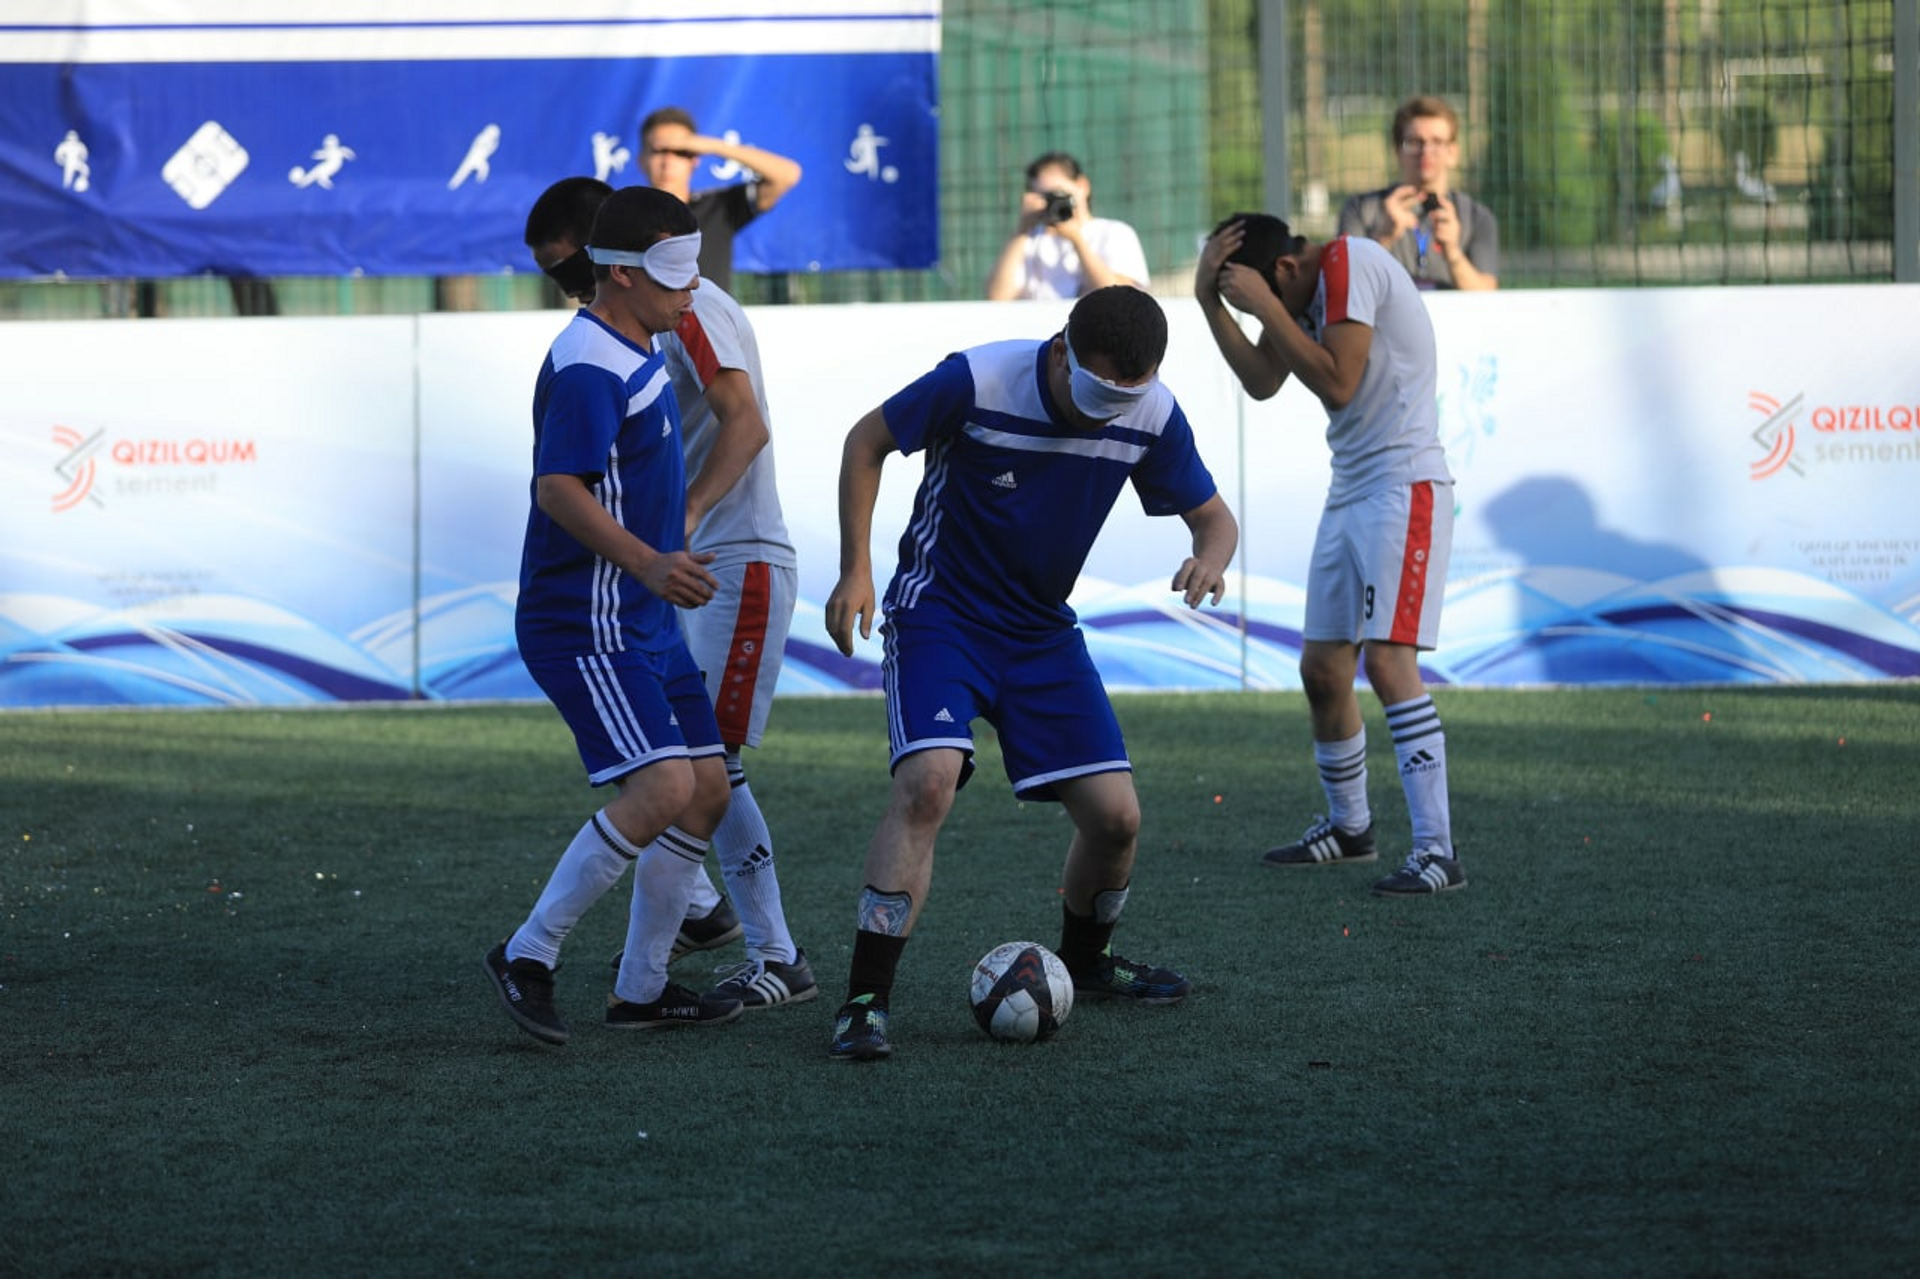 В Узбекистане впервые состоялся турнир по футболу 5х5 среди незрячих спортсменов - Sputnik Узбекистан, 1920, 21.06.2021